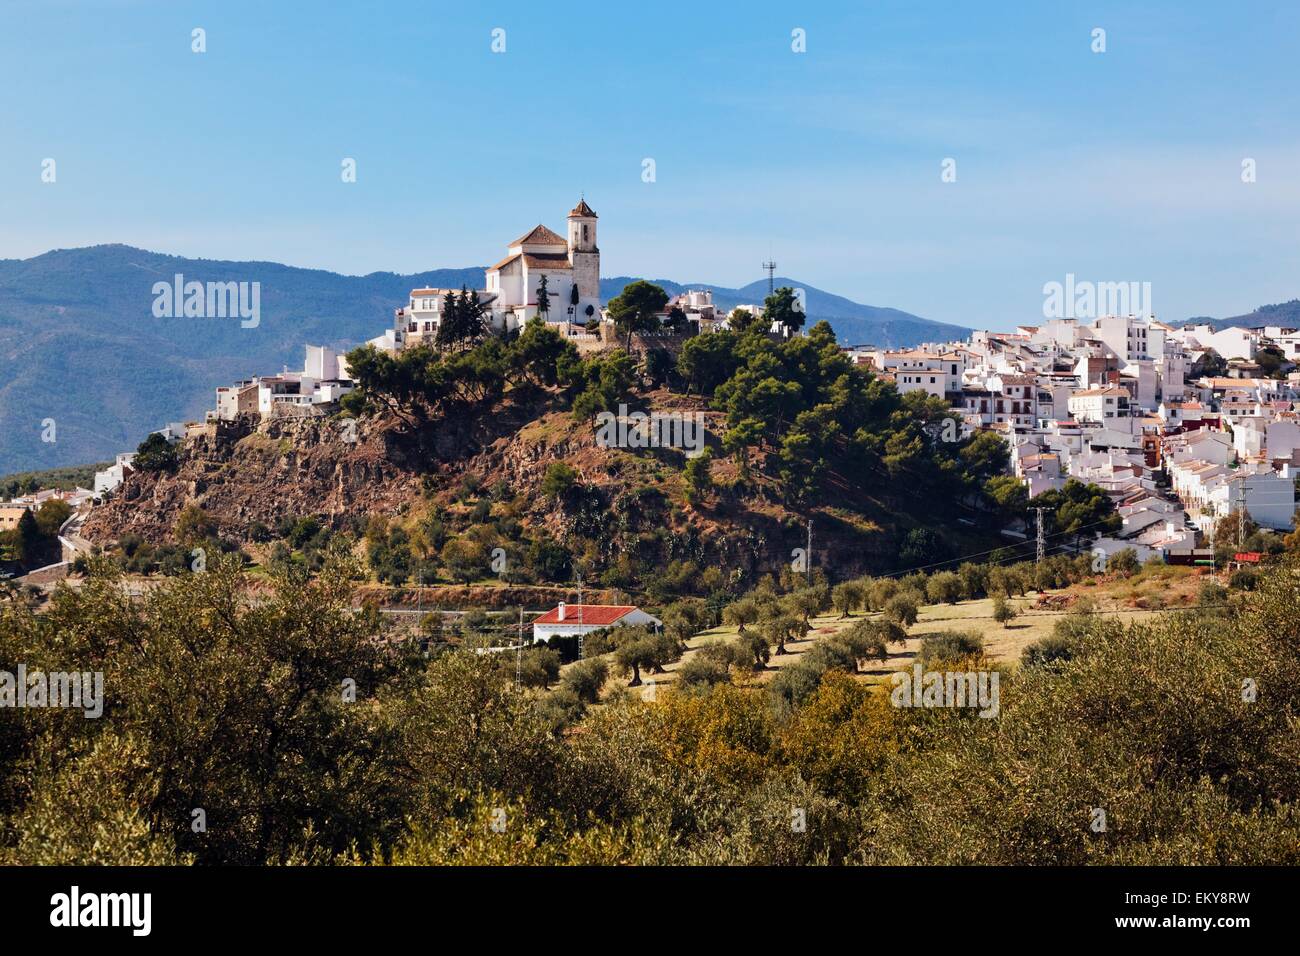 Alozaina, Malaga, Andalusia, Spain; The White Mountain Village Stock Photo